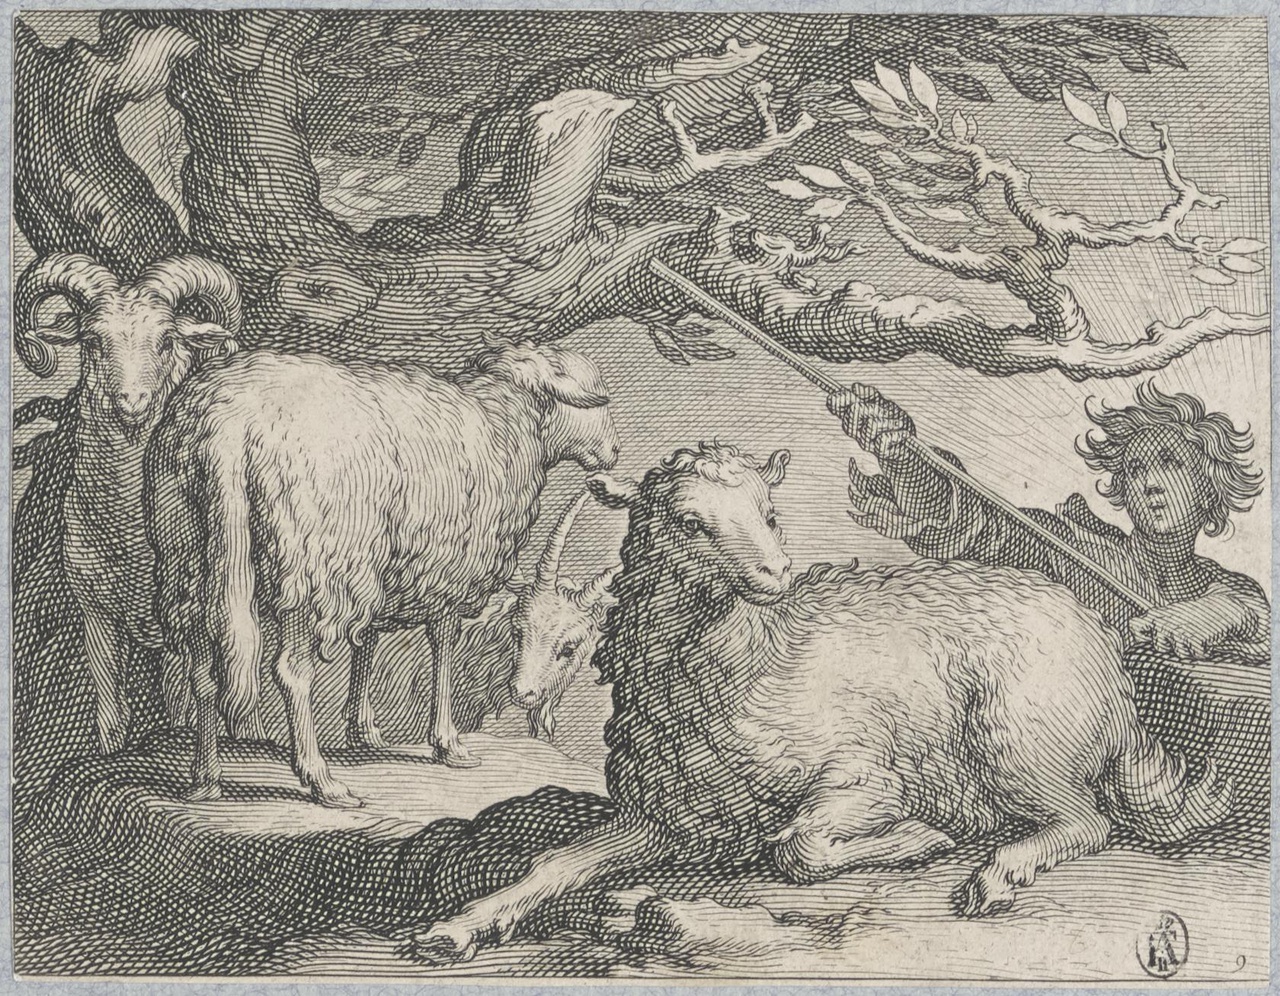 Herder met schapen